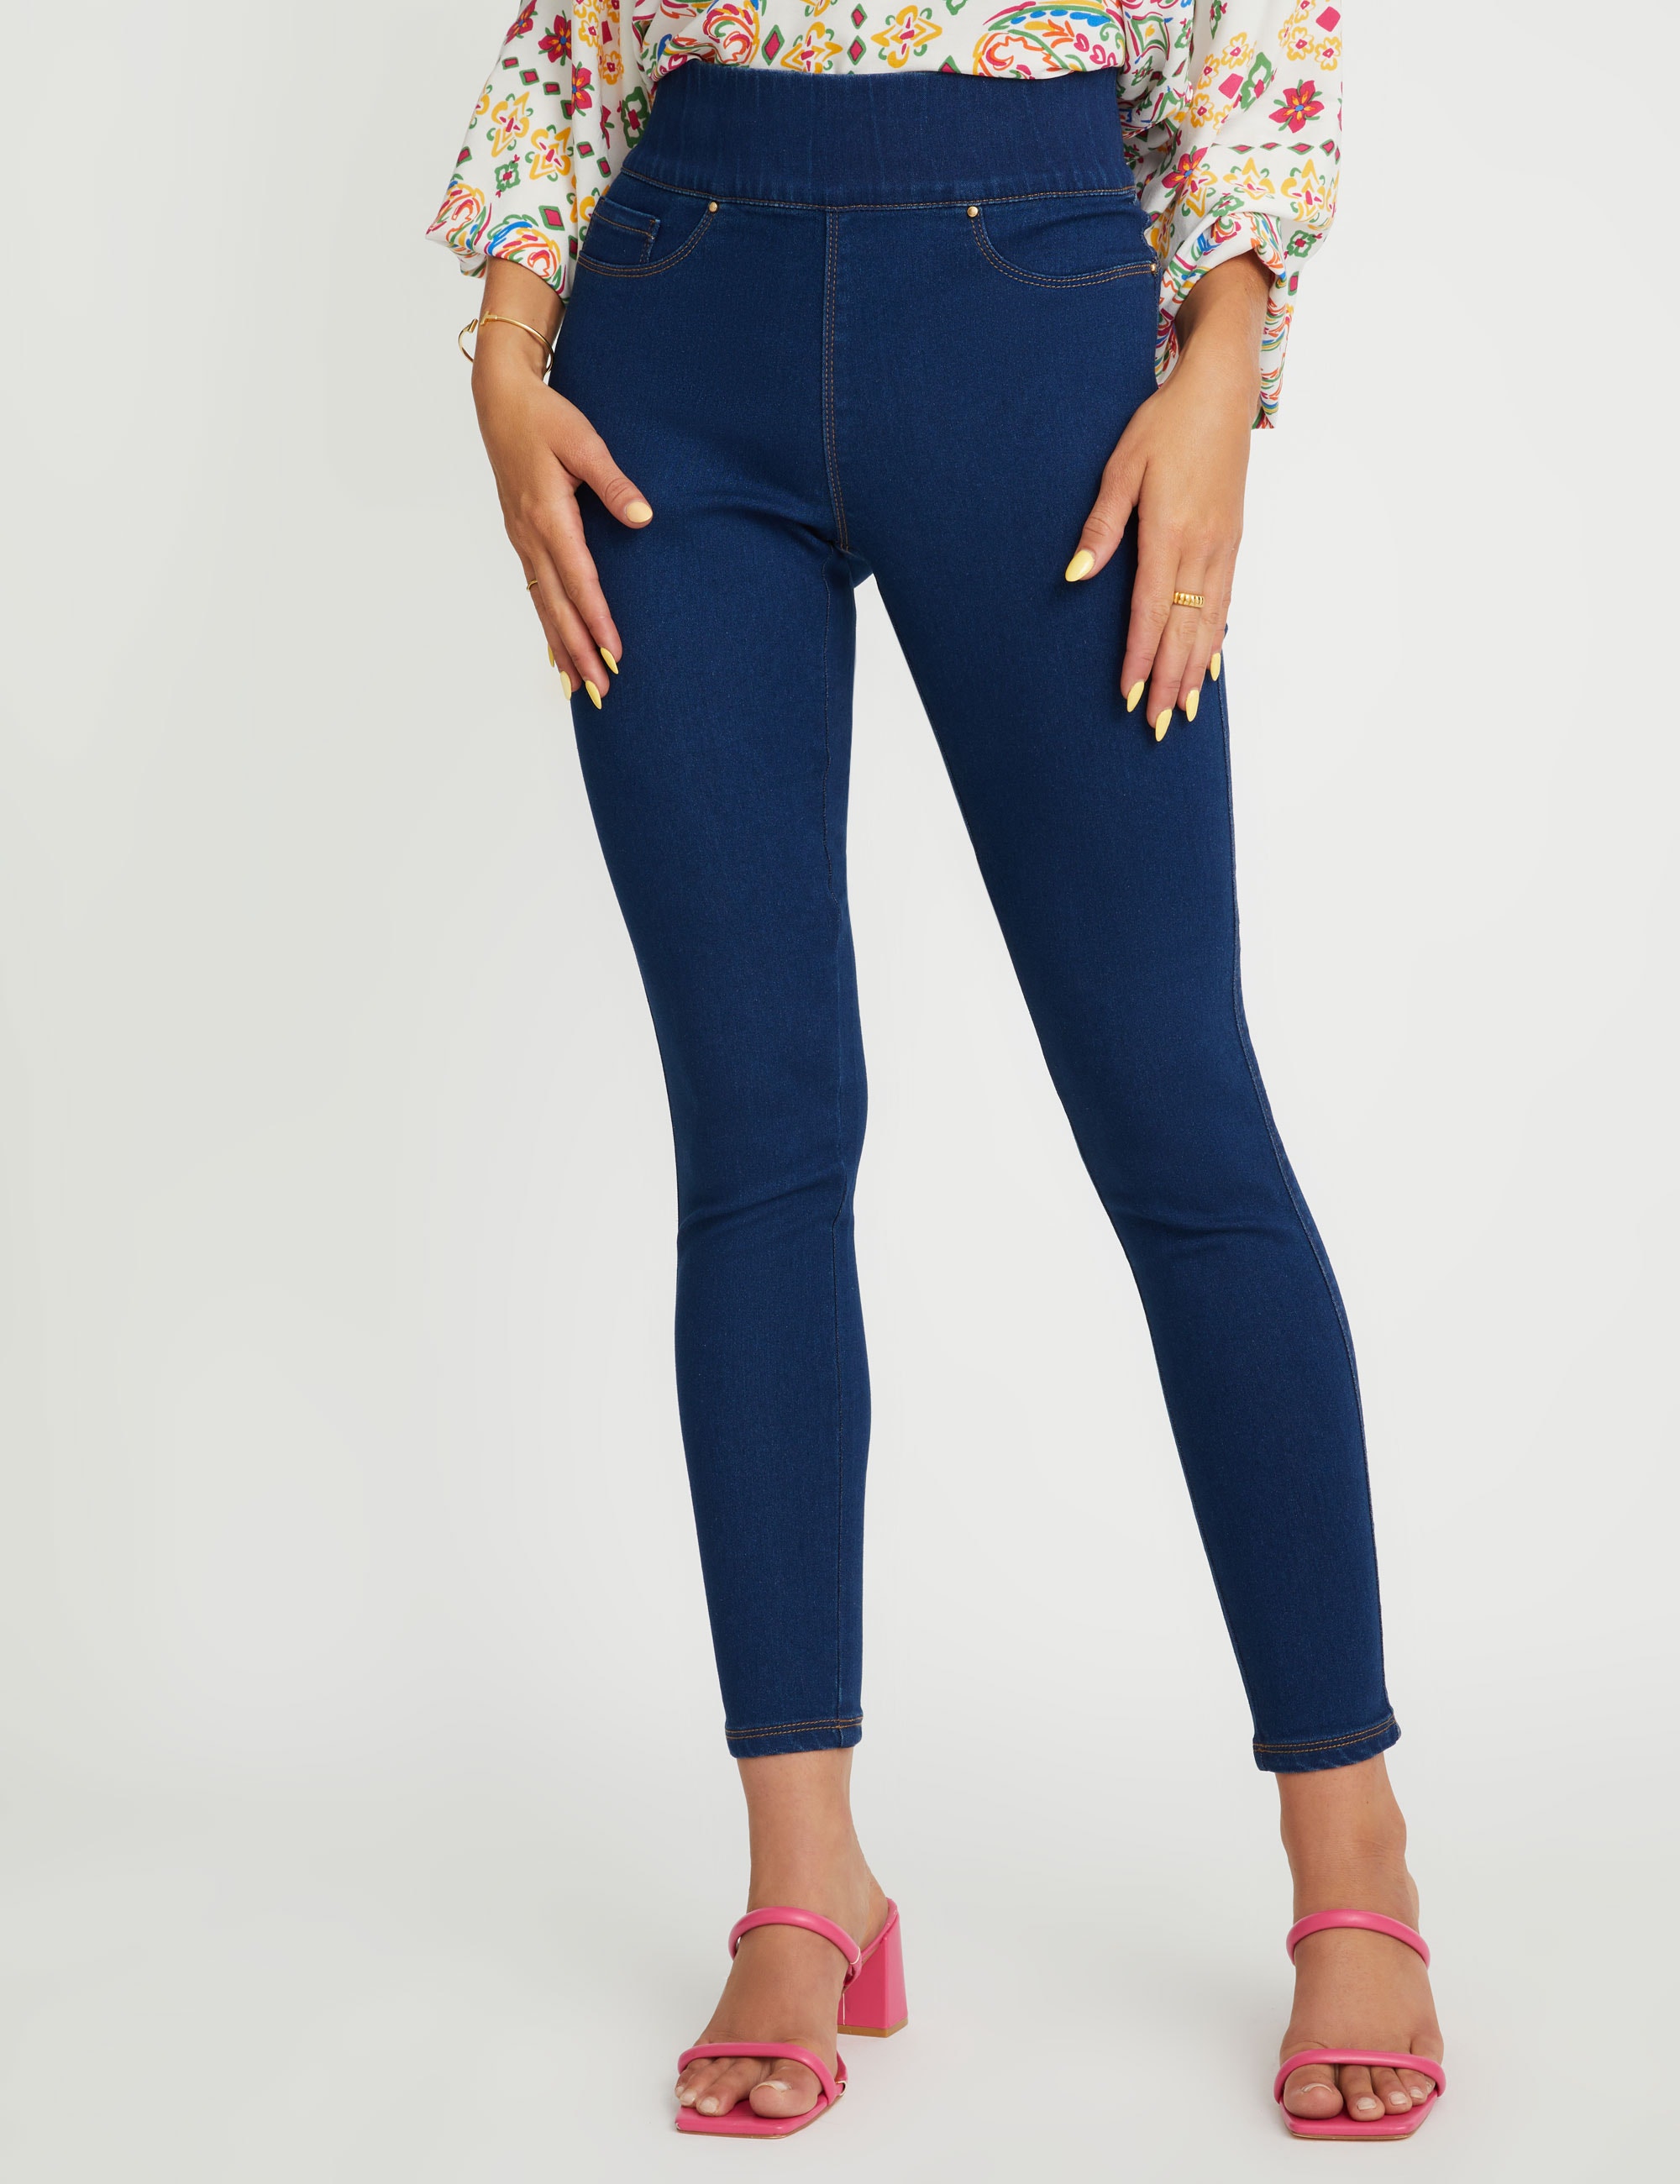 ROCKMANS - Womens Jeans - Blue Jeggings - Solid Cotton Leggings - Fashion  Pants